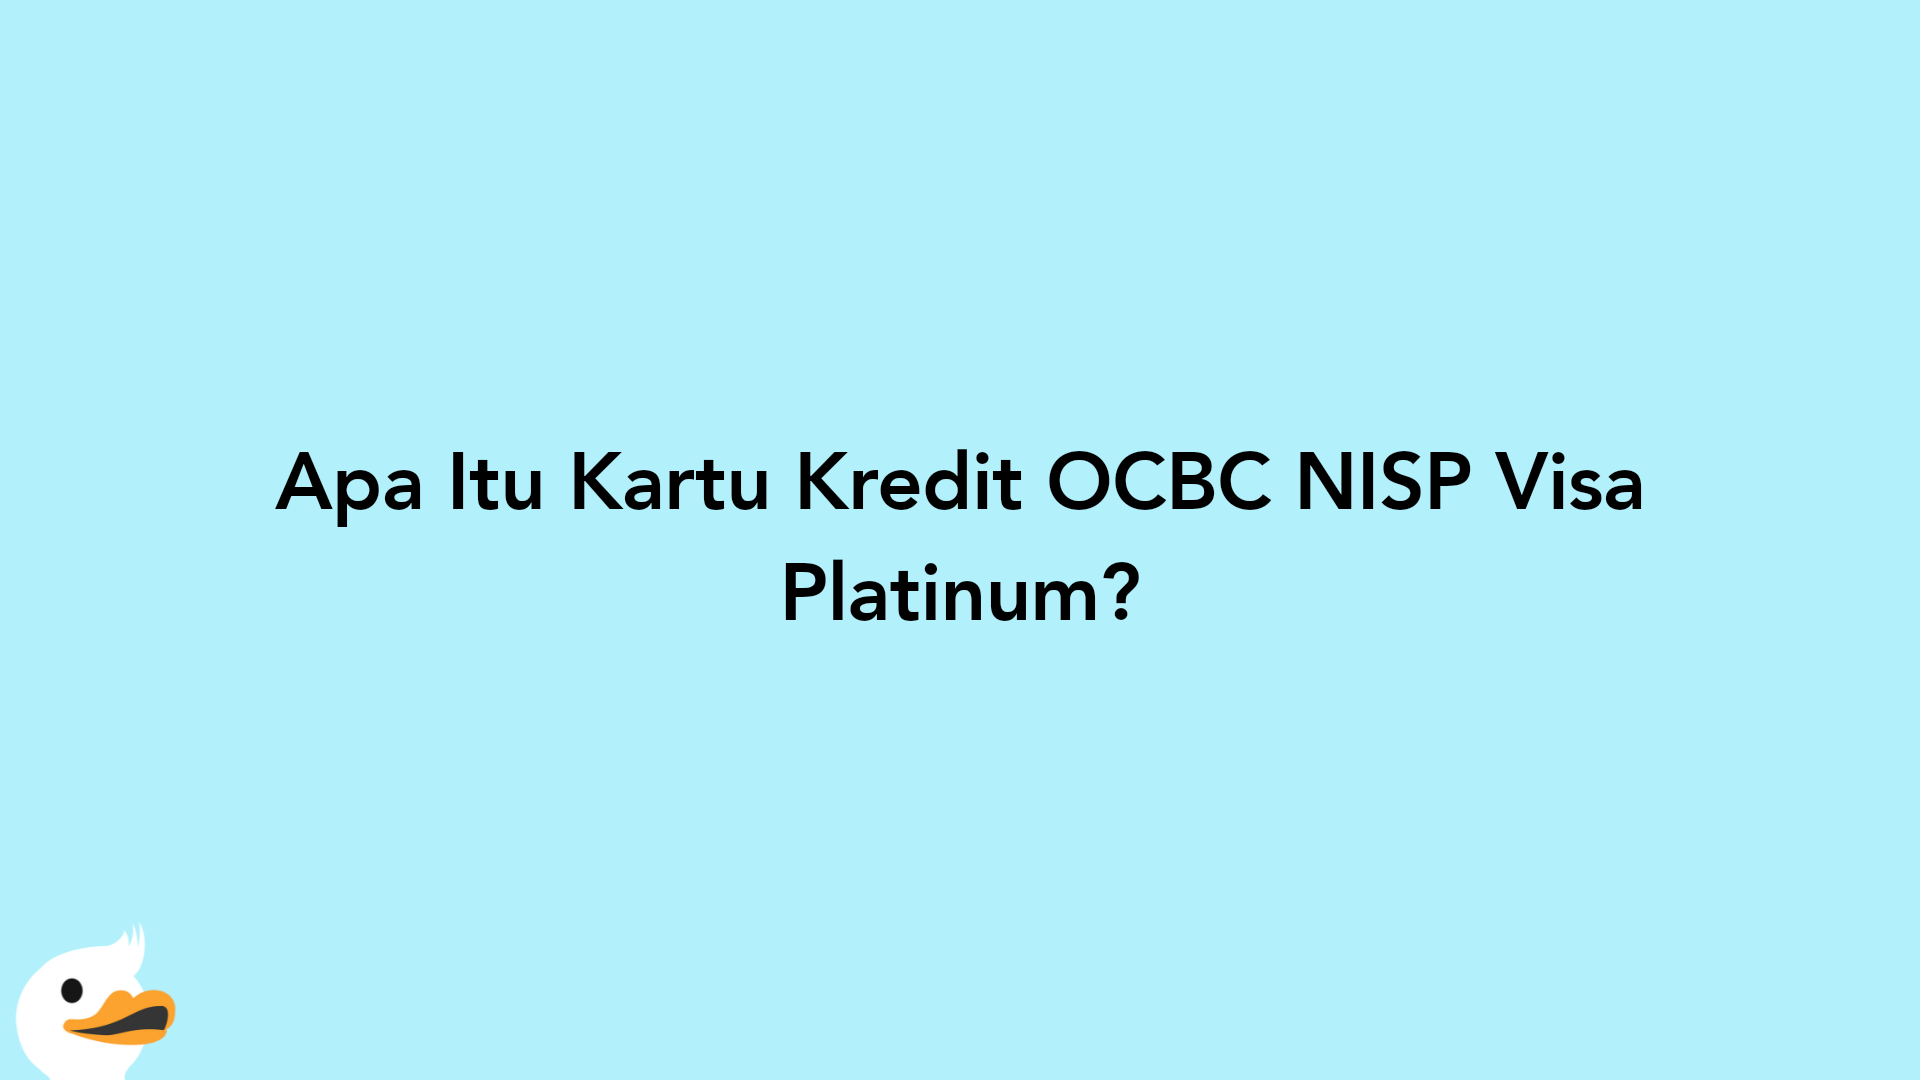 Apa Itu Kartu Kredit OCBC NISP Visa Platinum?